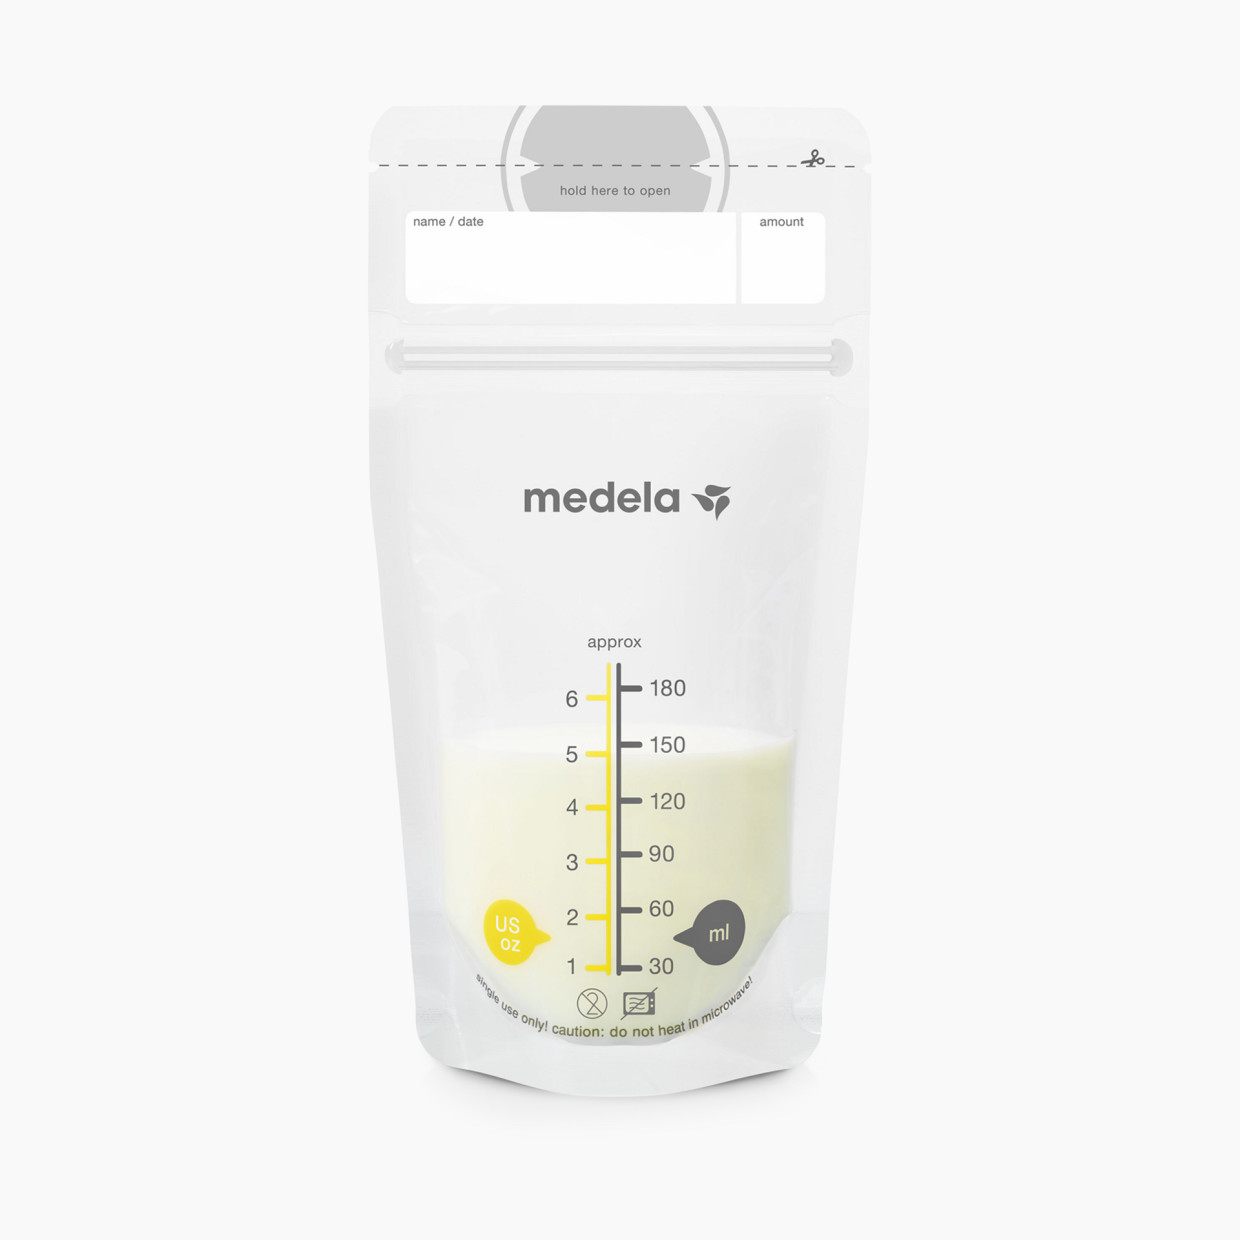 Medela Storage Set & Feeding Kit - 3 Pack